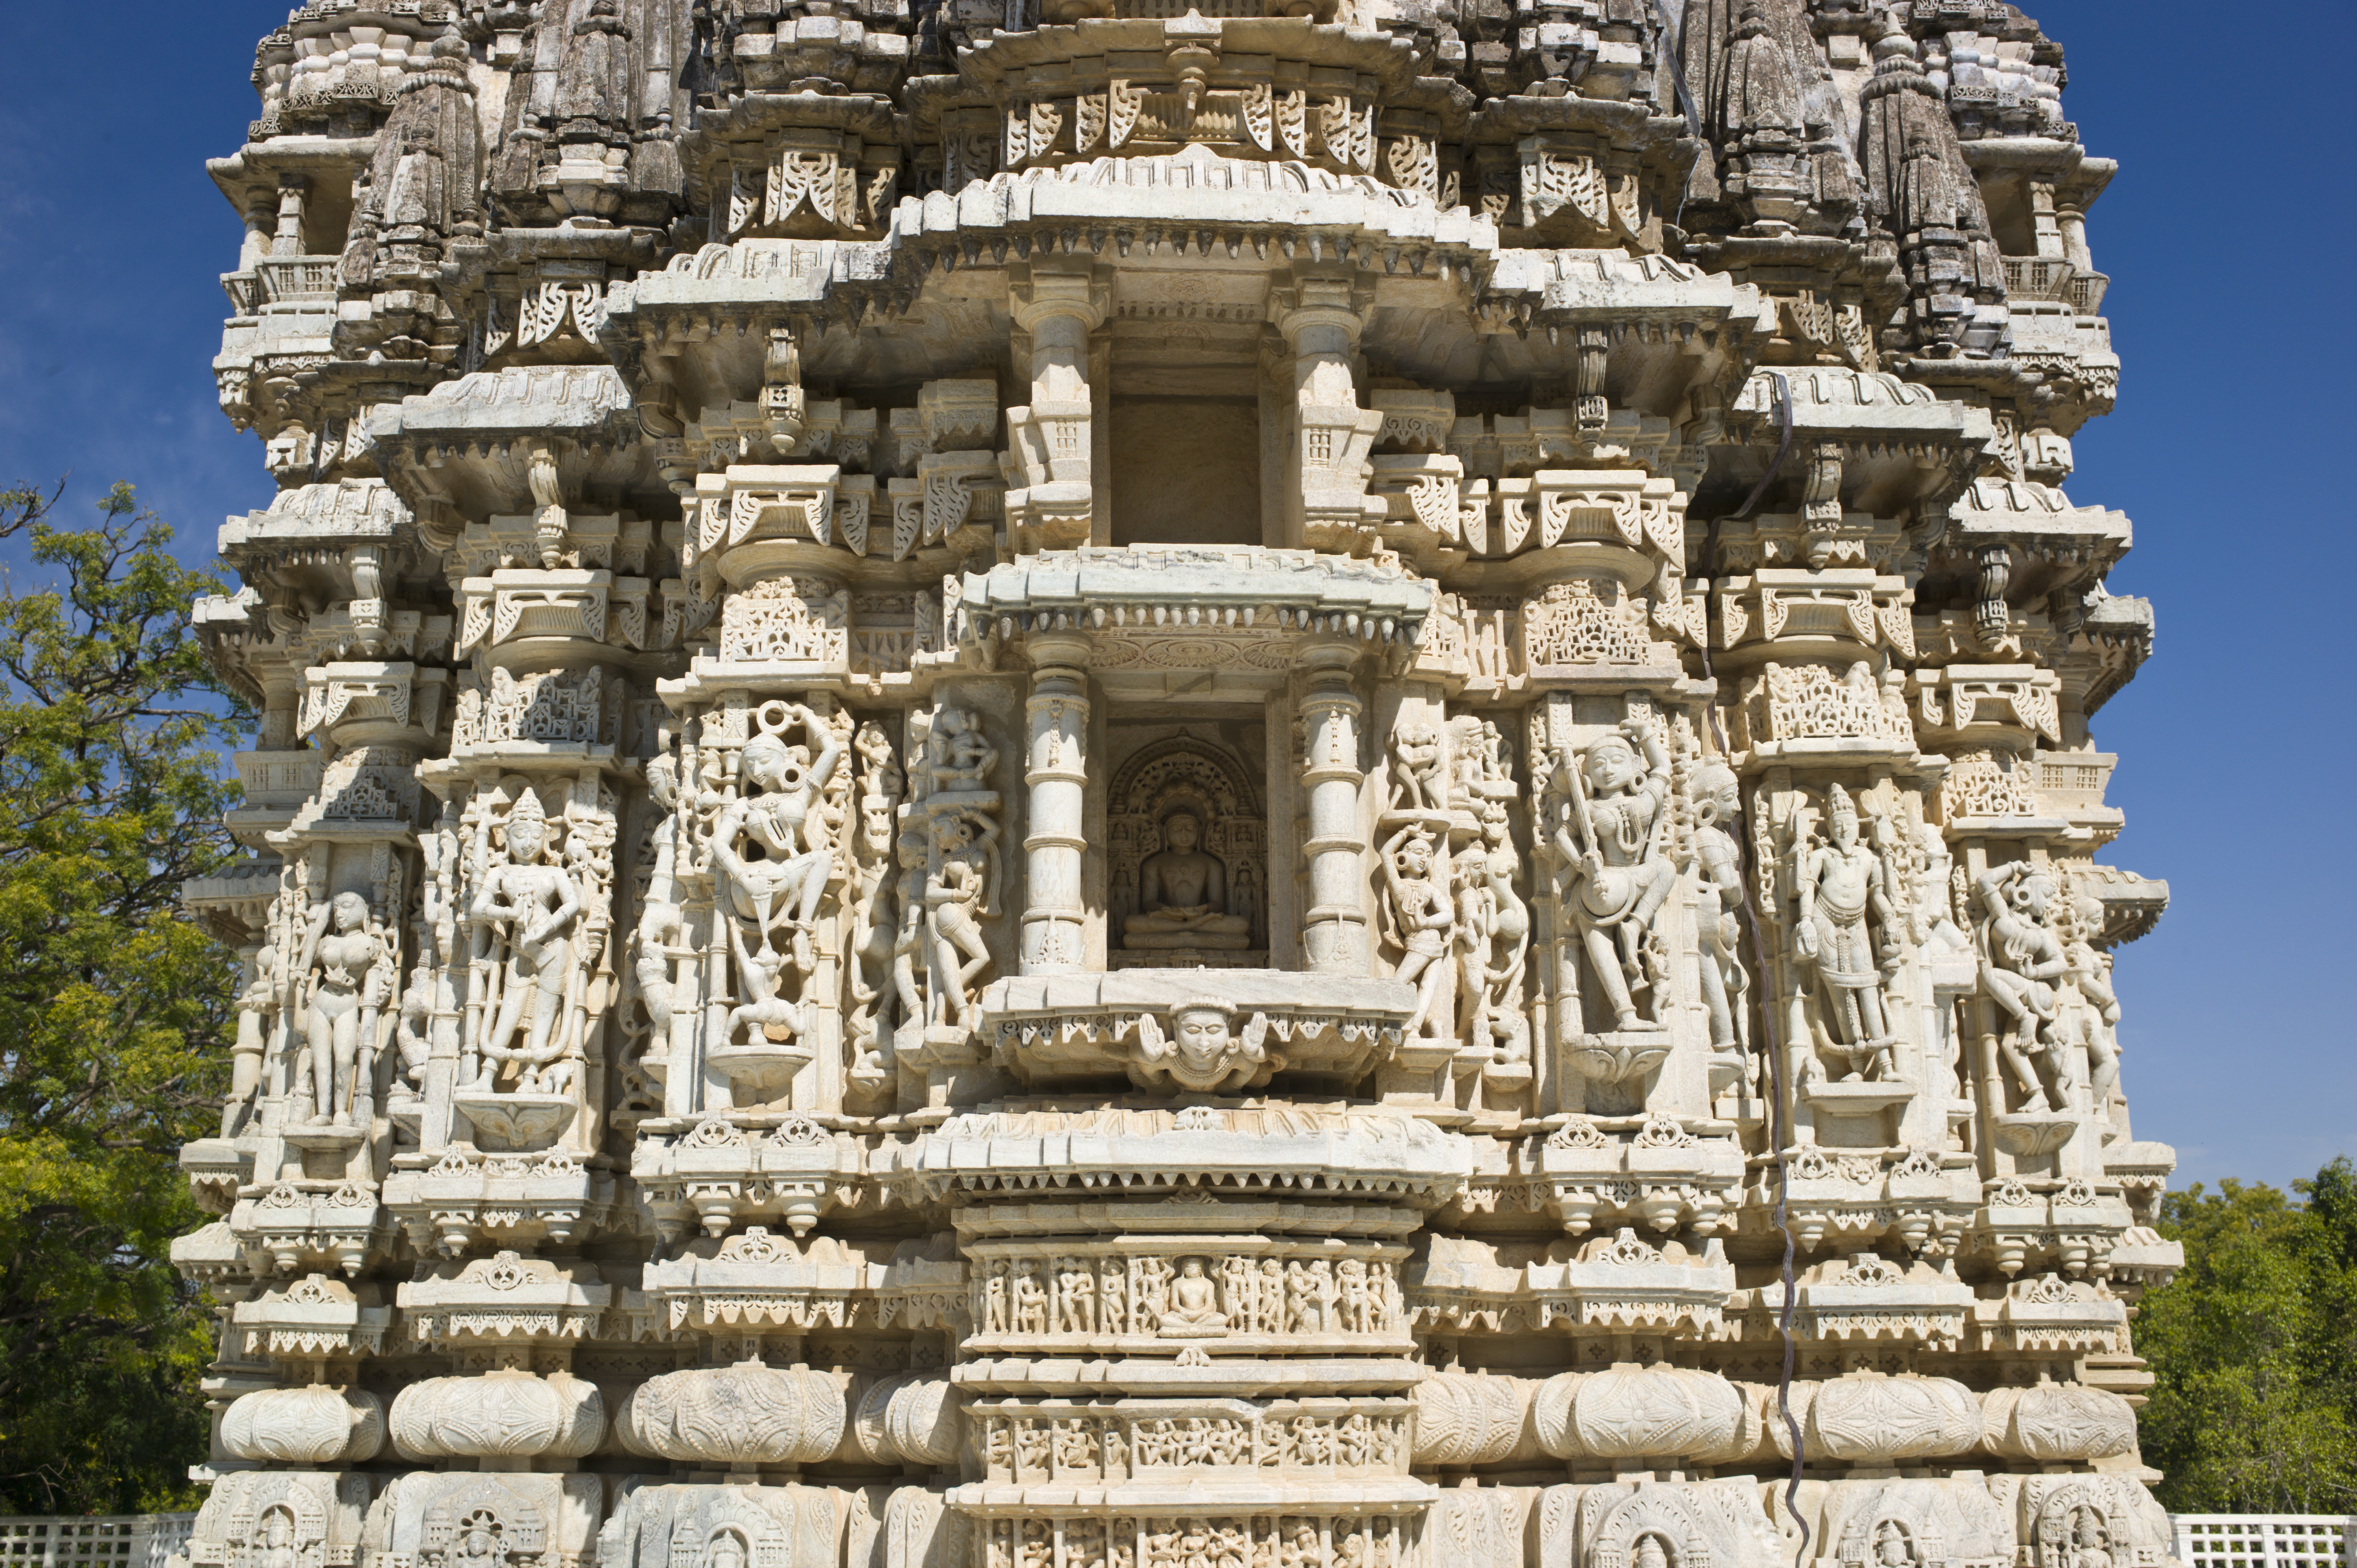 Dilwara Jain temple